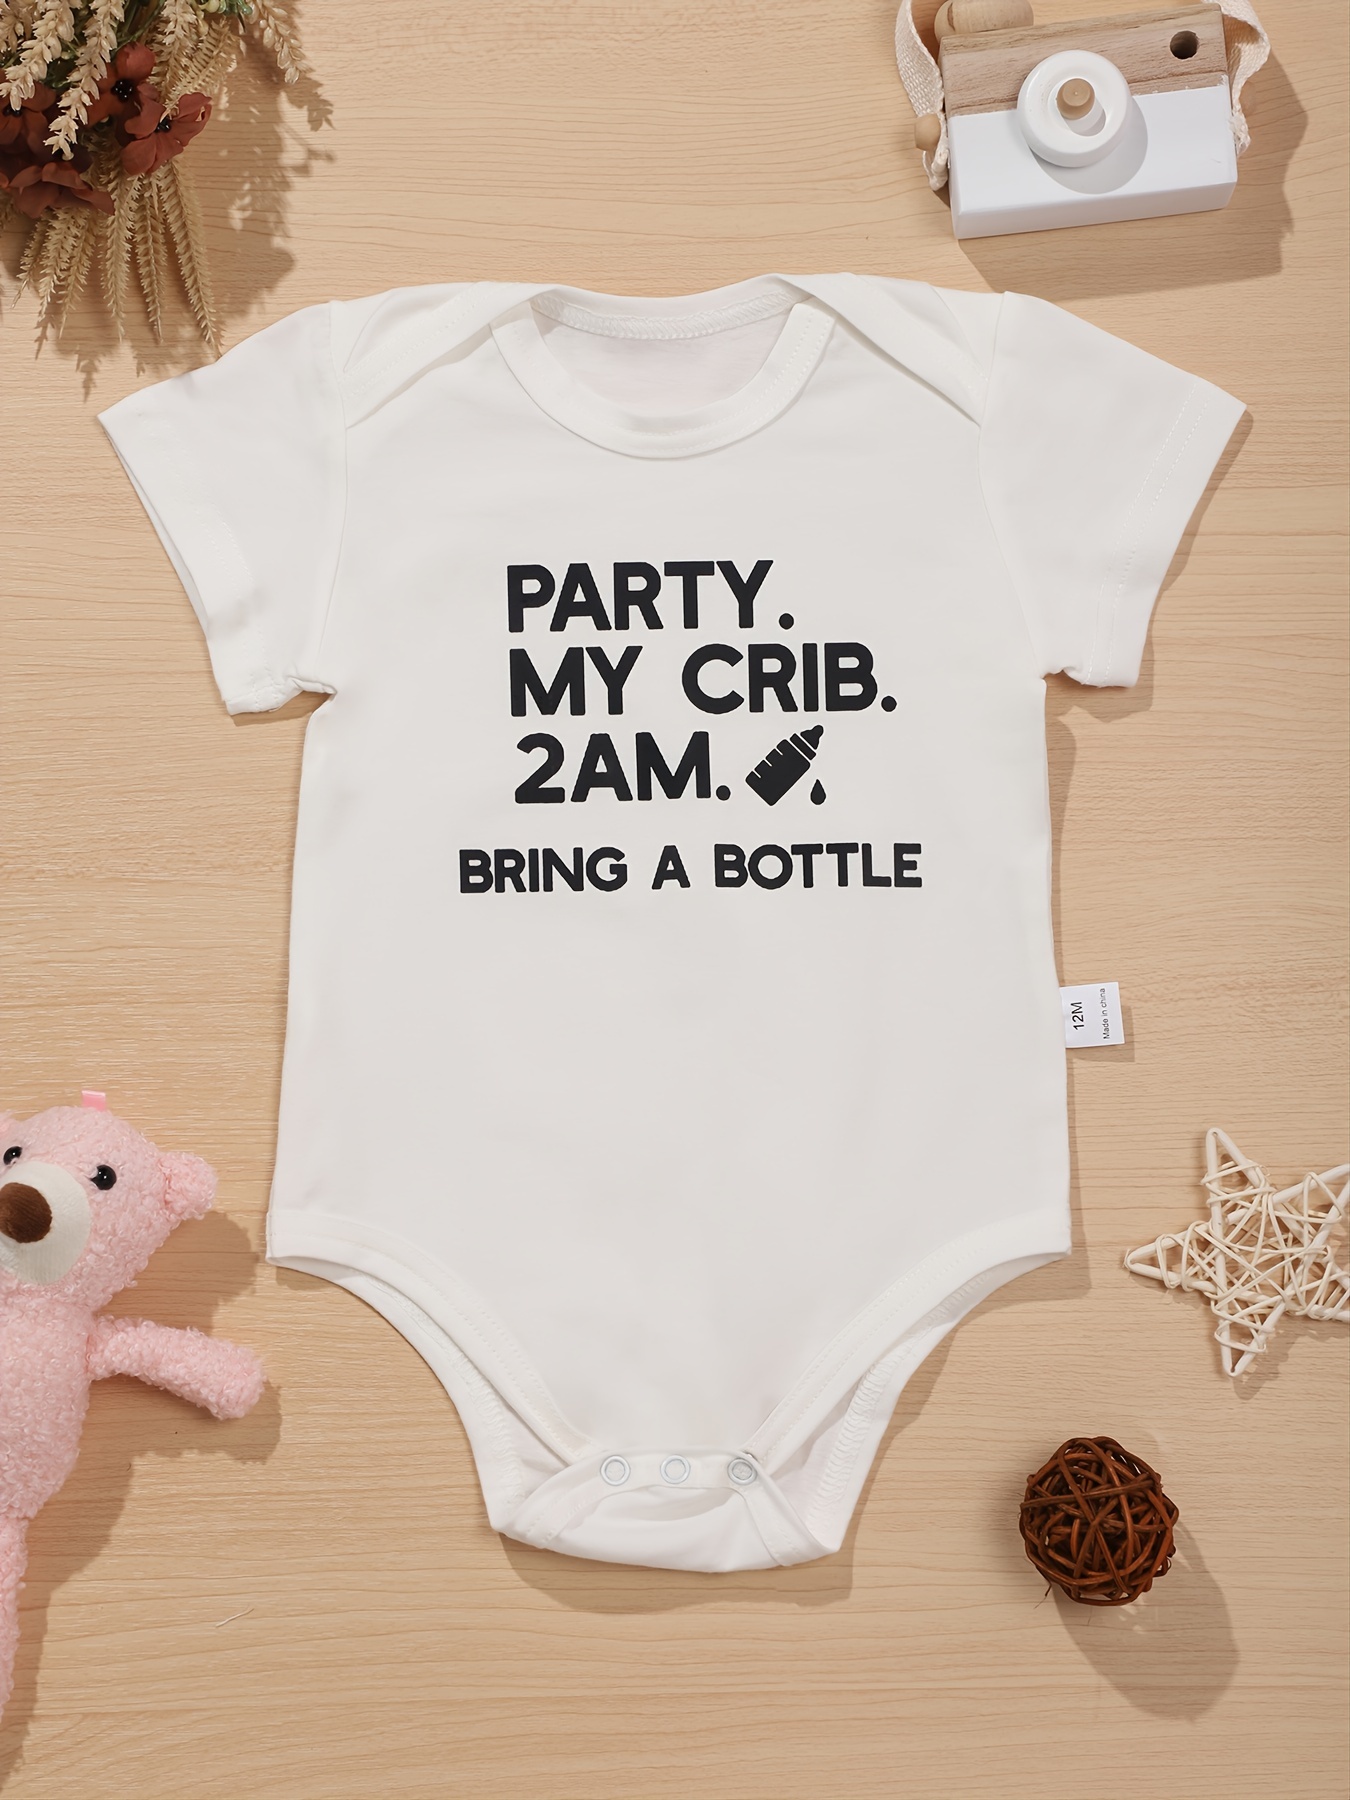 Babero de bebé personalizado con nombre bordado y sombrero de algodón a  juego, juego de recuerdos para baby shower.